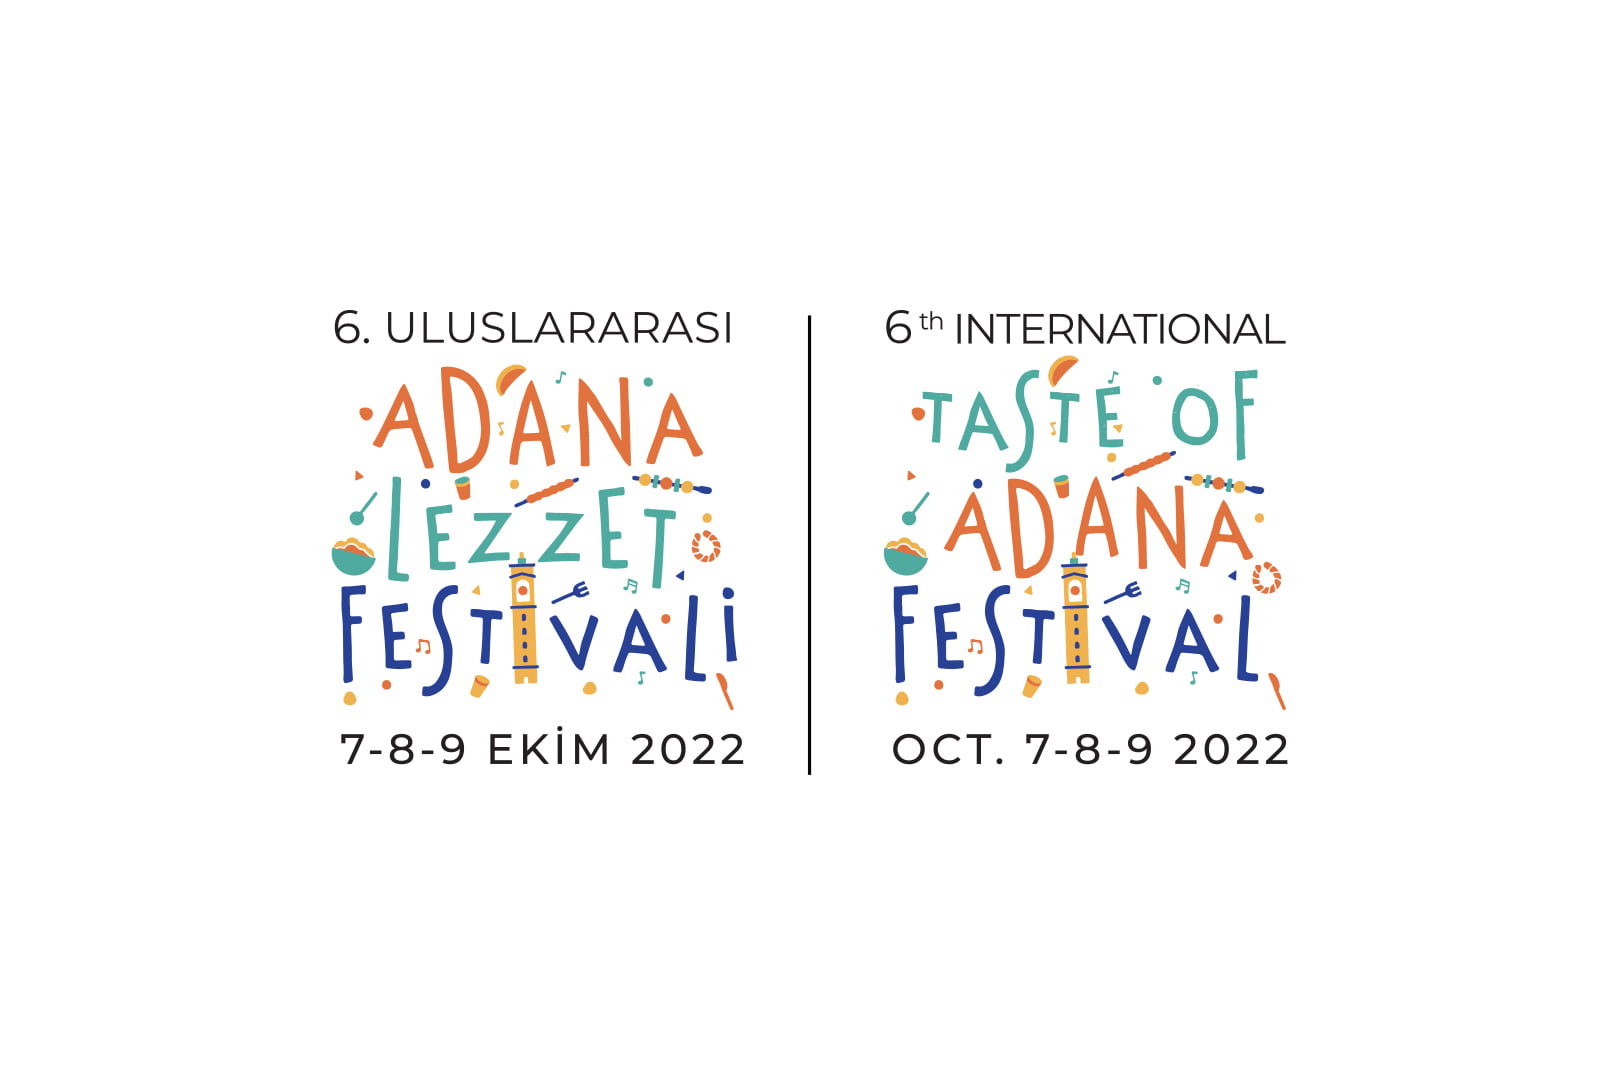 “Uluslararası Adana Lezzet Festivali yaklaşıyor”